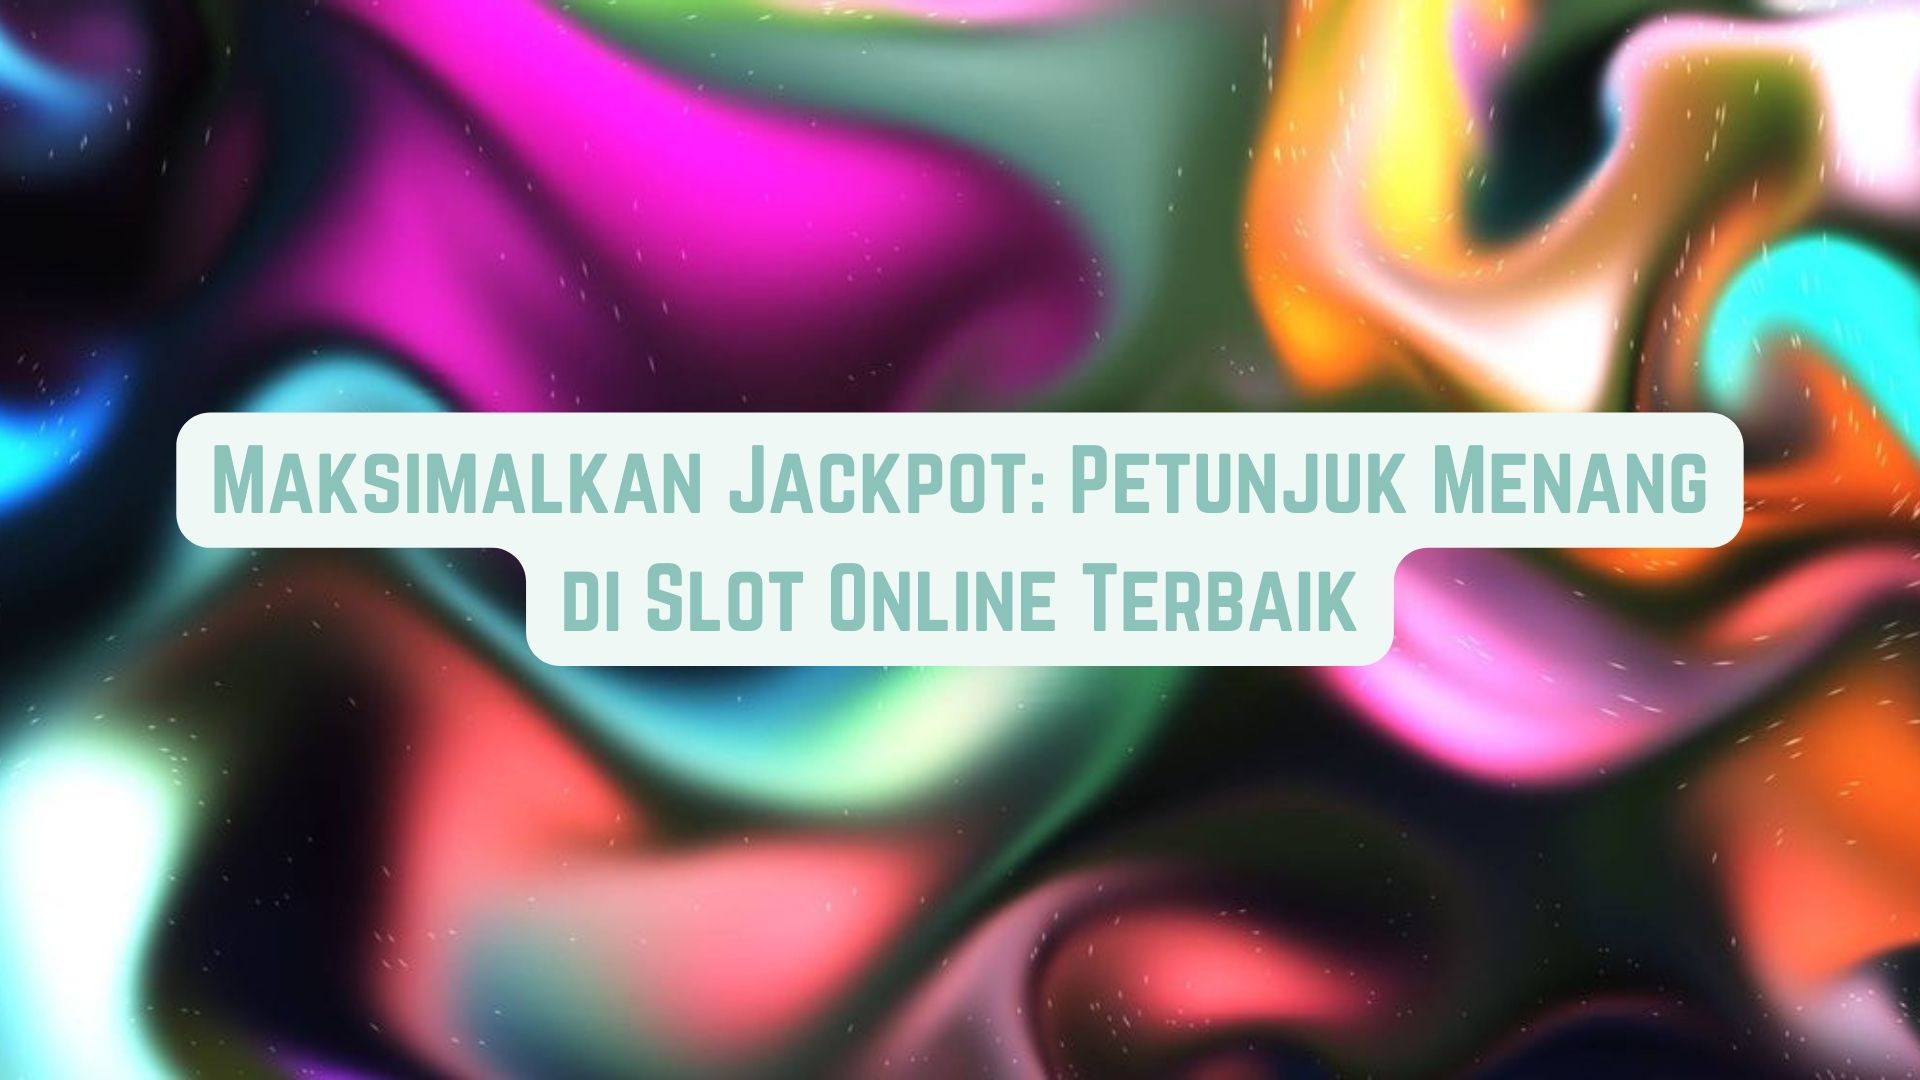 Maksimalkan Jackpot: Petunjuk Menang di Game Online Terbaik